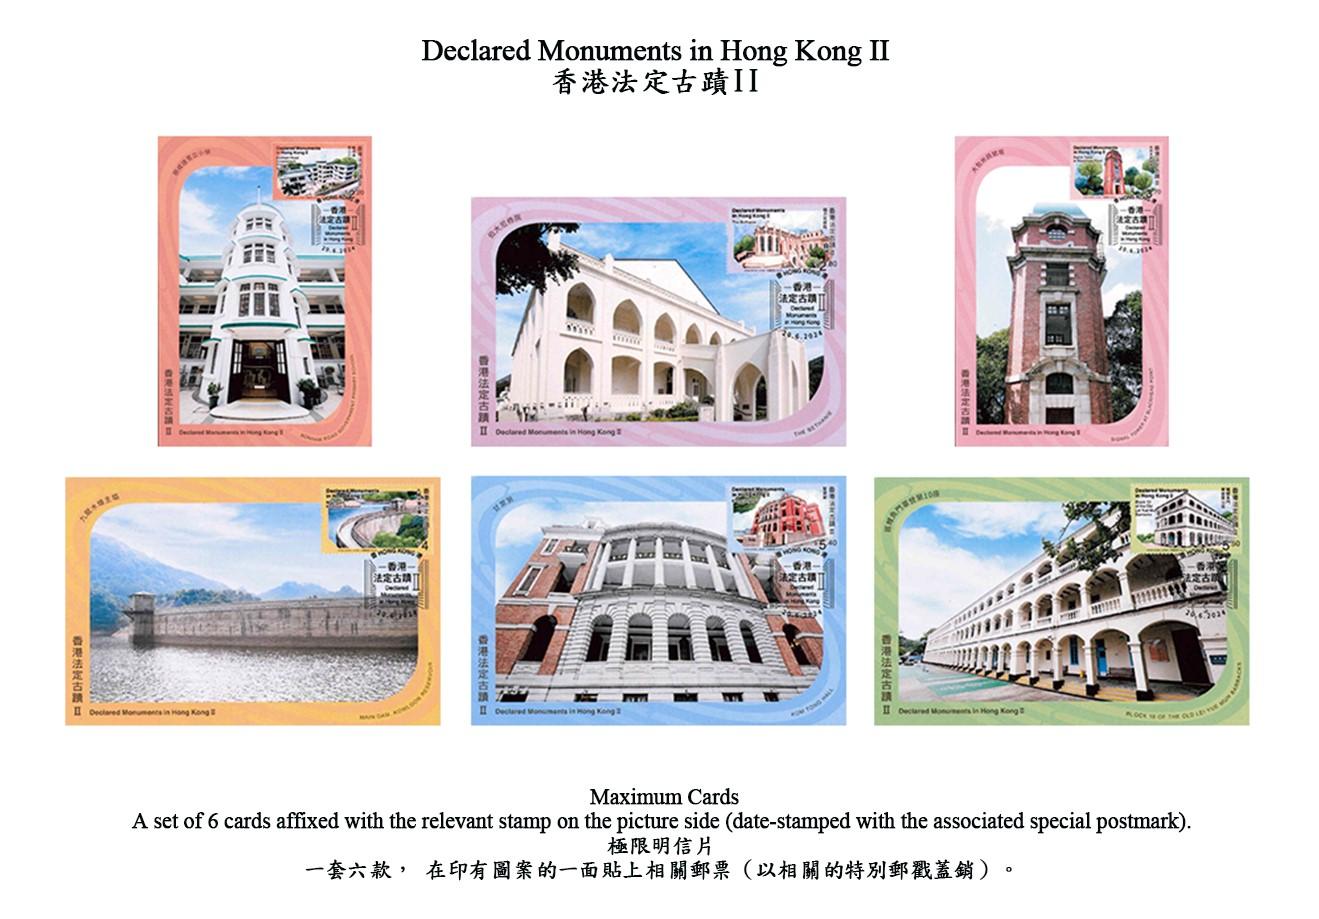 香港邮政六月二十日（星期四）发行以「香港法定古迹II」为题的特别邮票及相关集邮品。图示极限明信片。